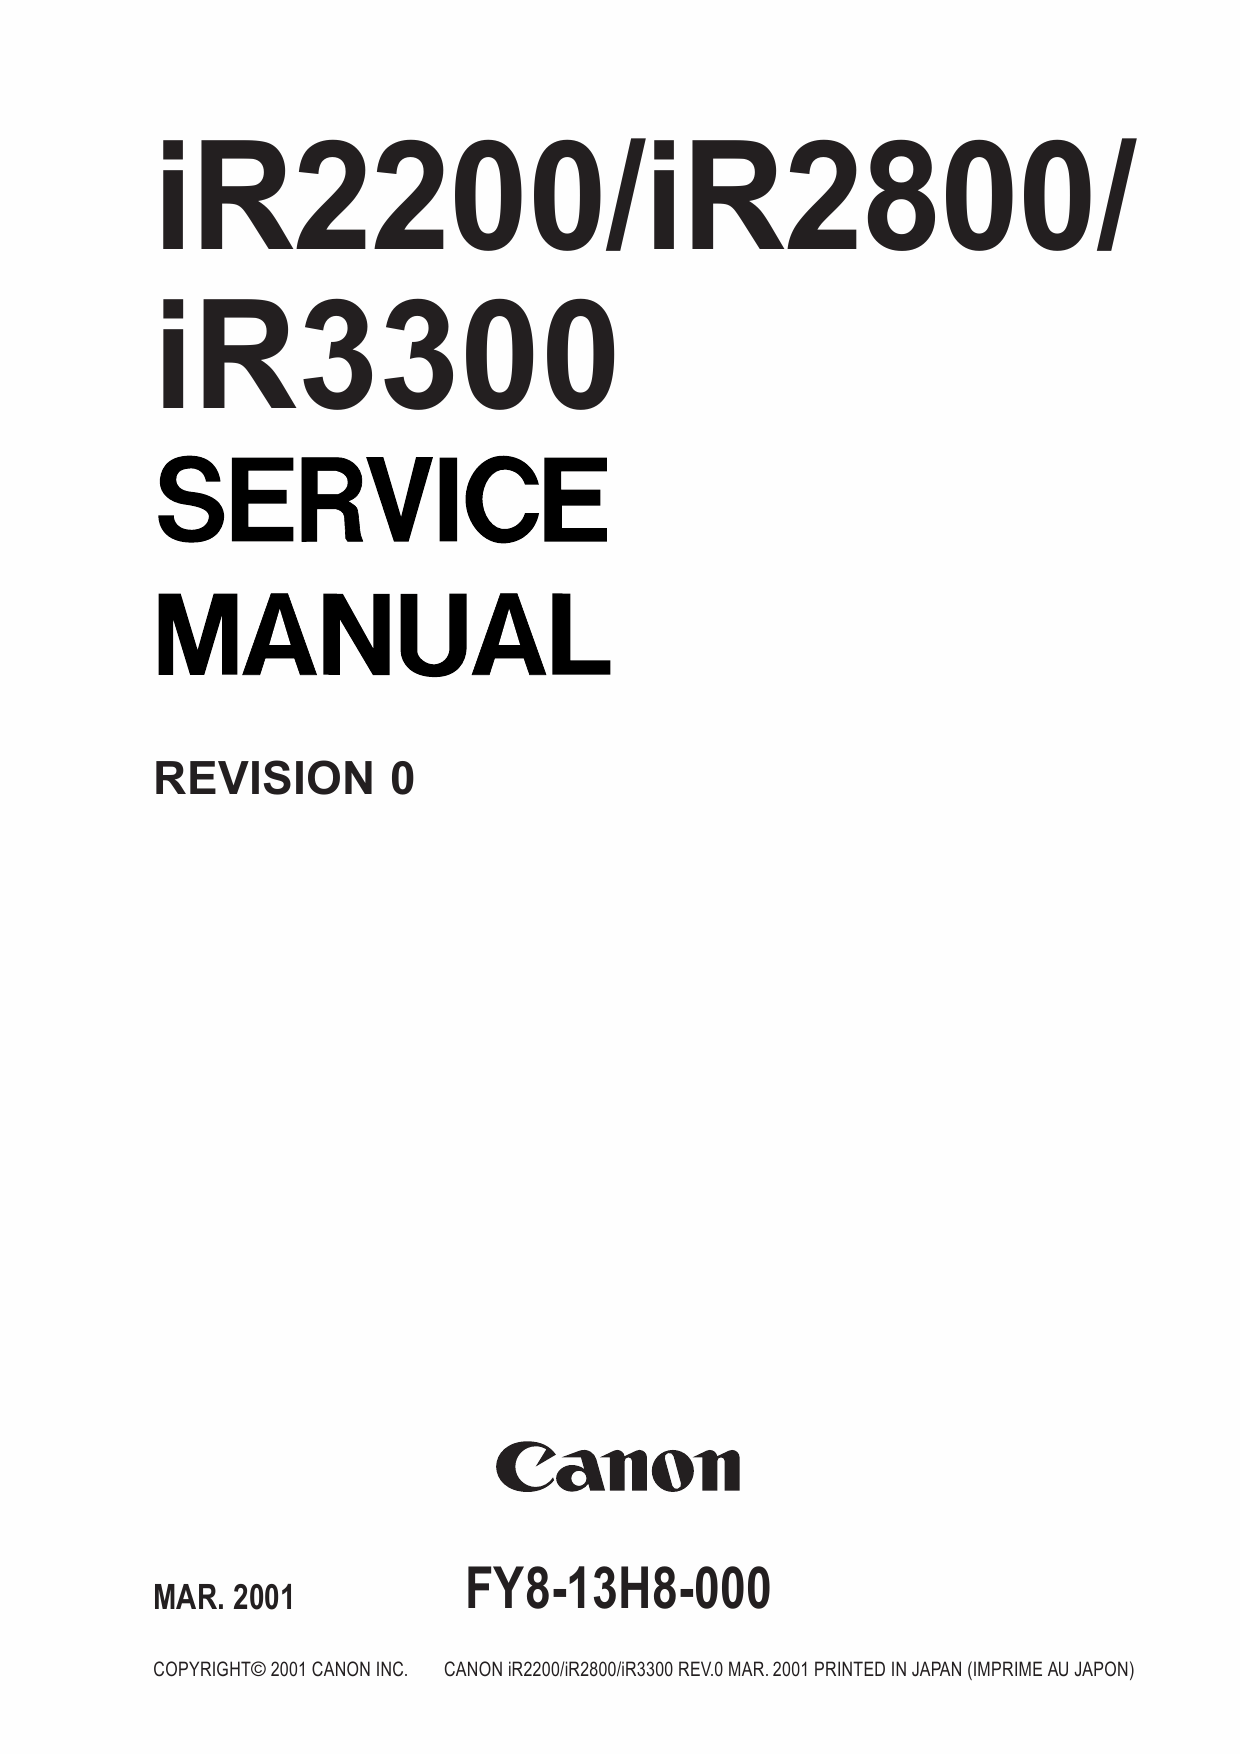 Canon Ir 2800 Manual